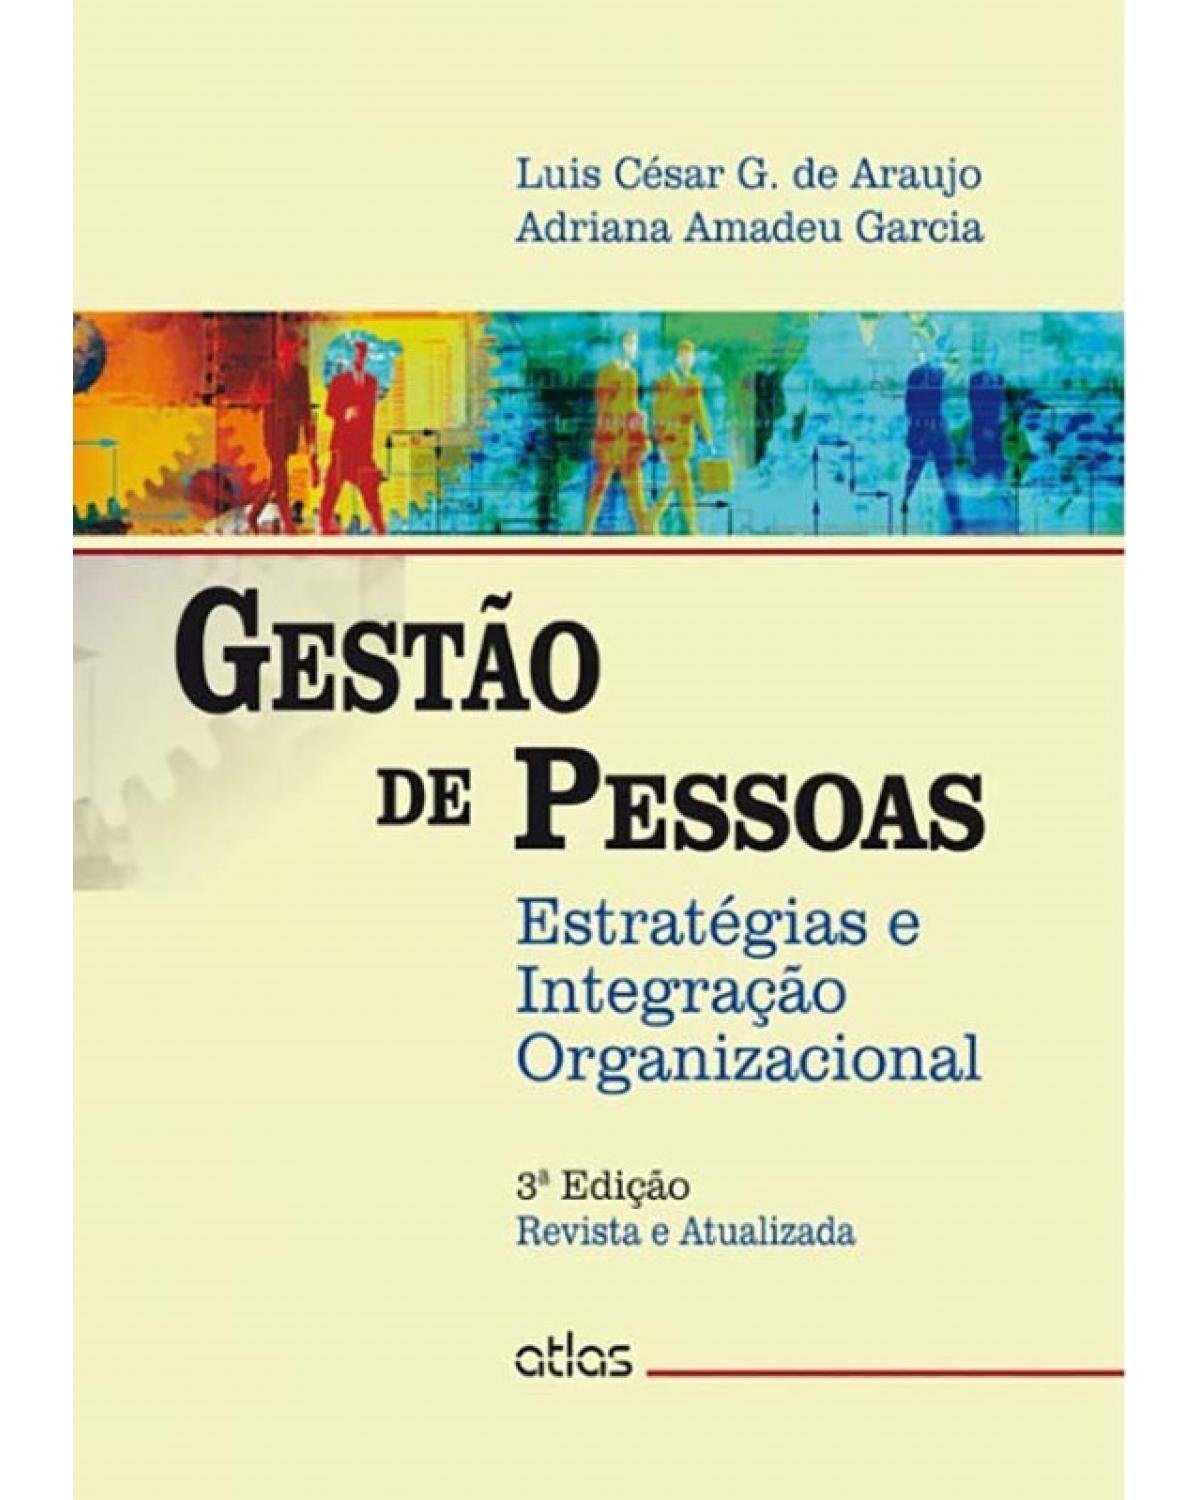 Gestão de pessoas - Estratégias e integração organizacional - 3ª Edição | 2014